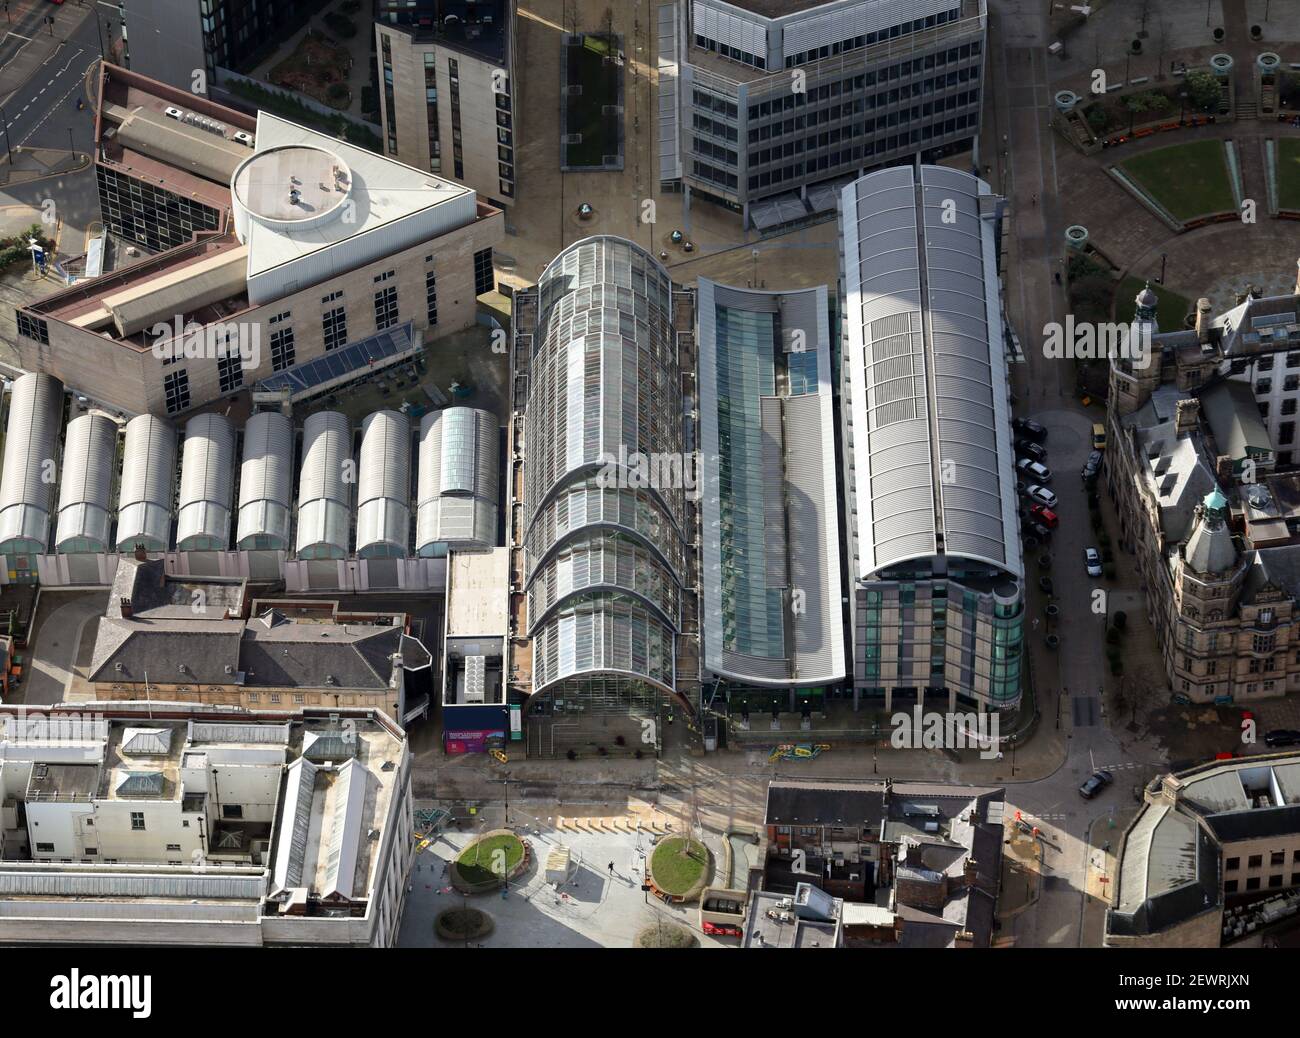 Vue aérienne du jardin d'hiver (grande serre) Dans le centre-ville de Sheffield Banque D'Images